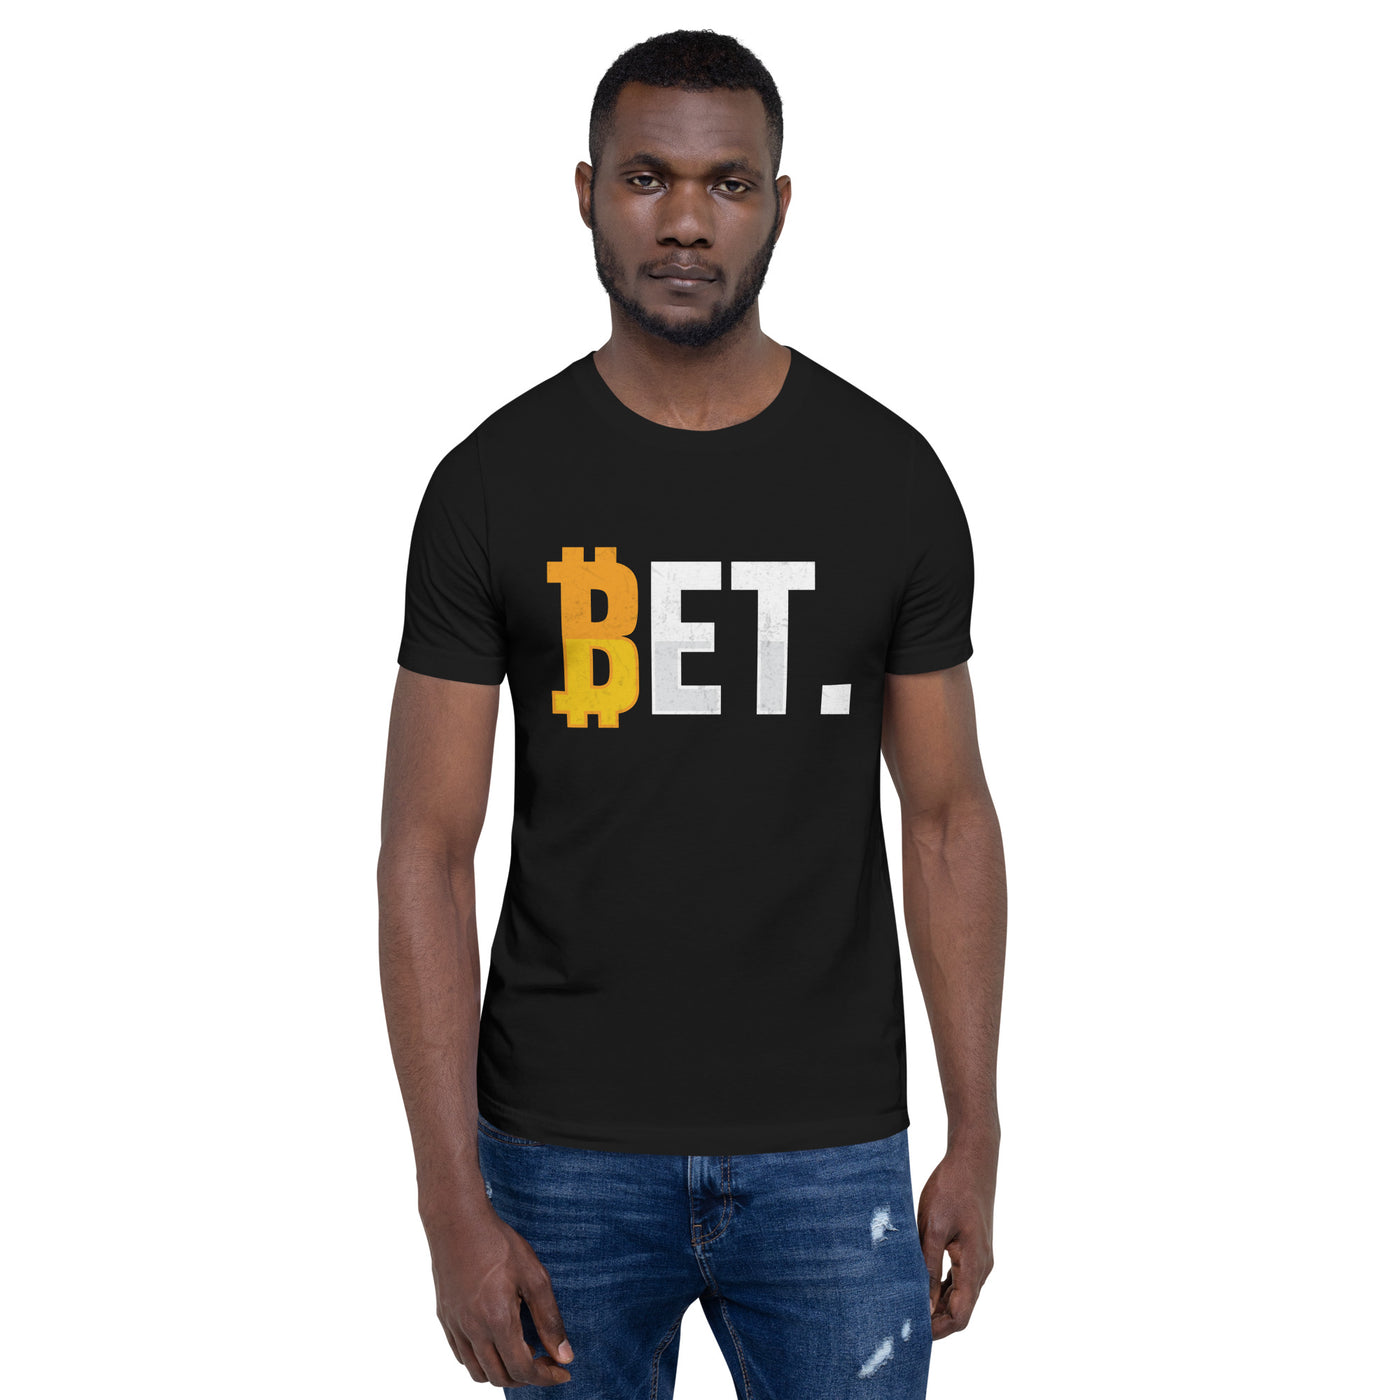 BET - Unisex t-shirt